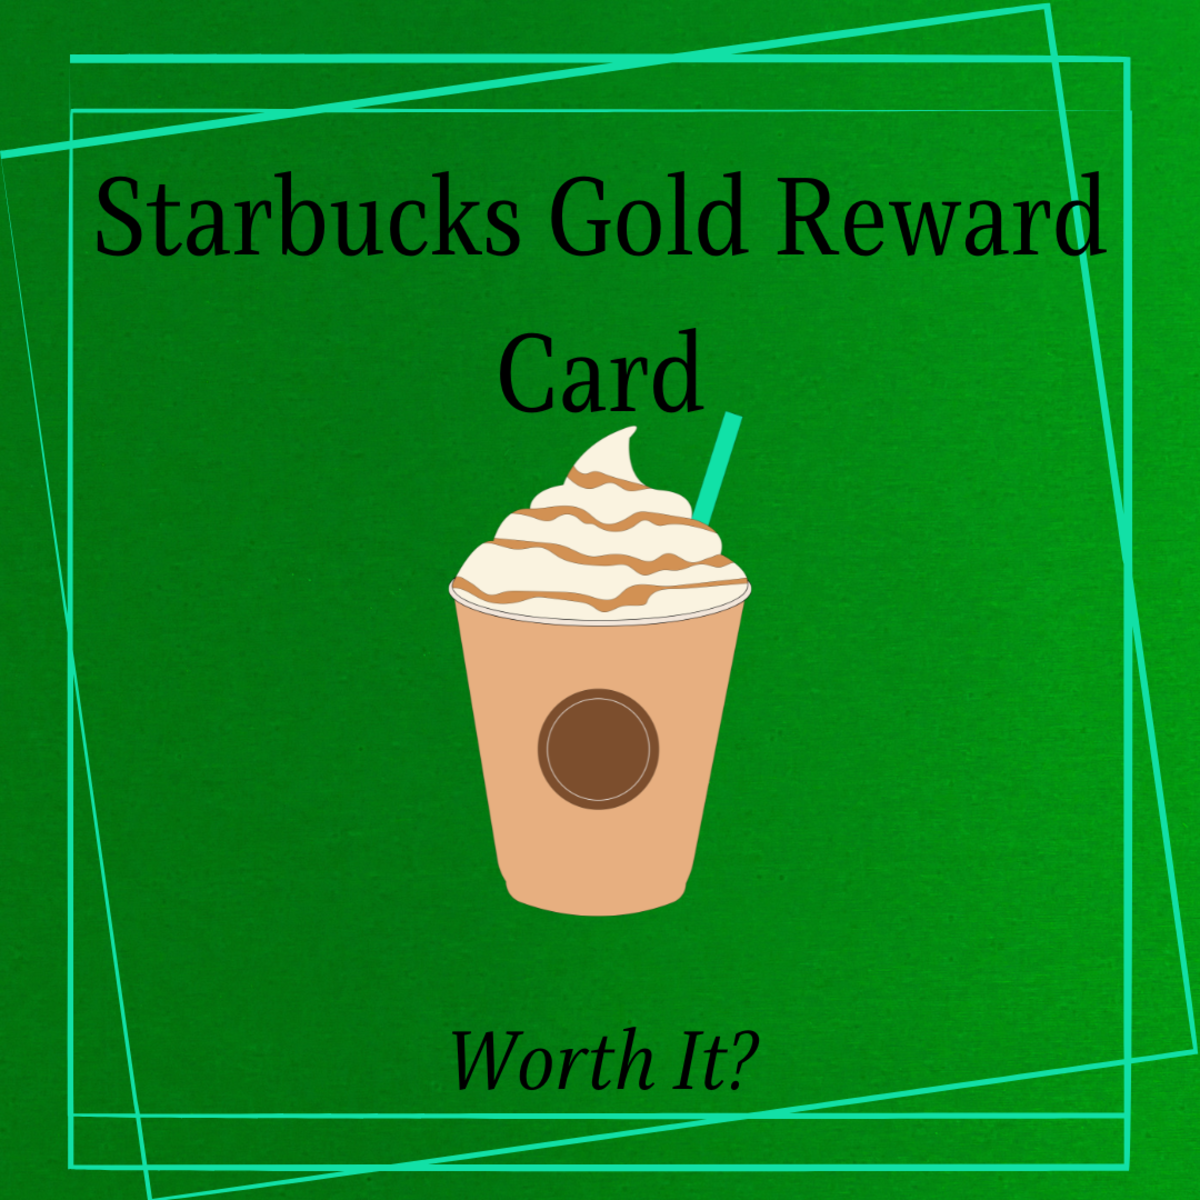 Is the Starbucks Gold Reward Card Worth It?